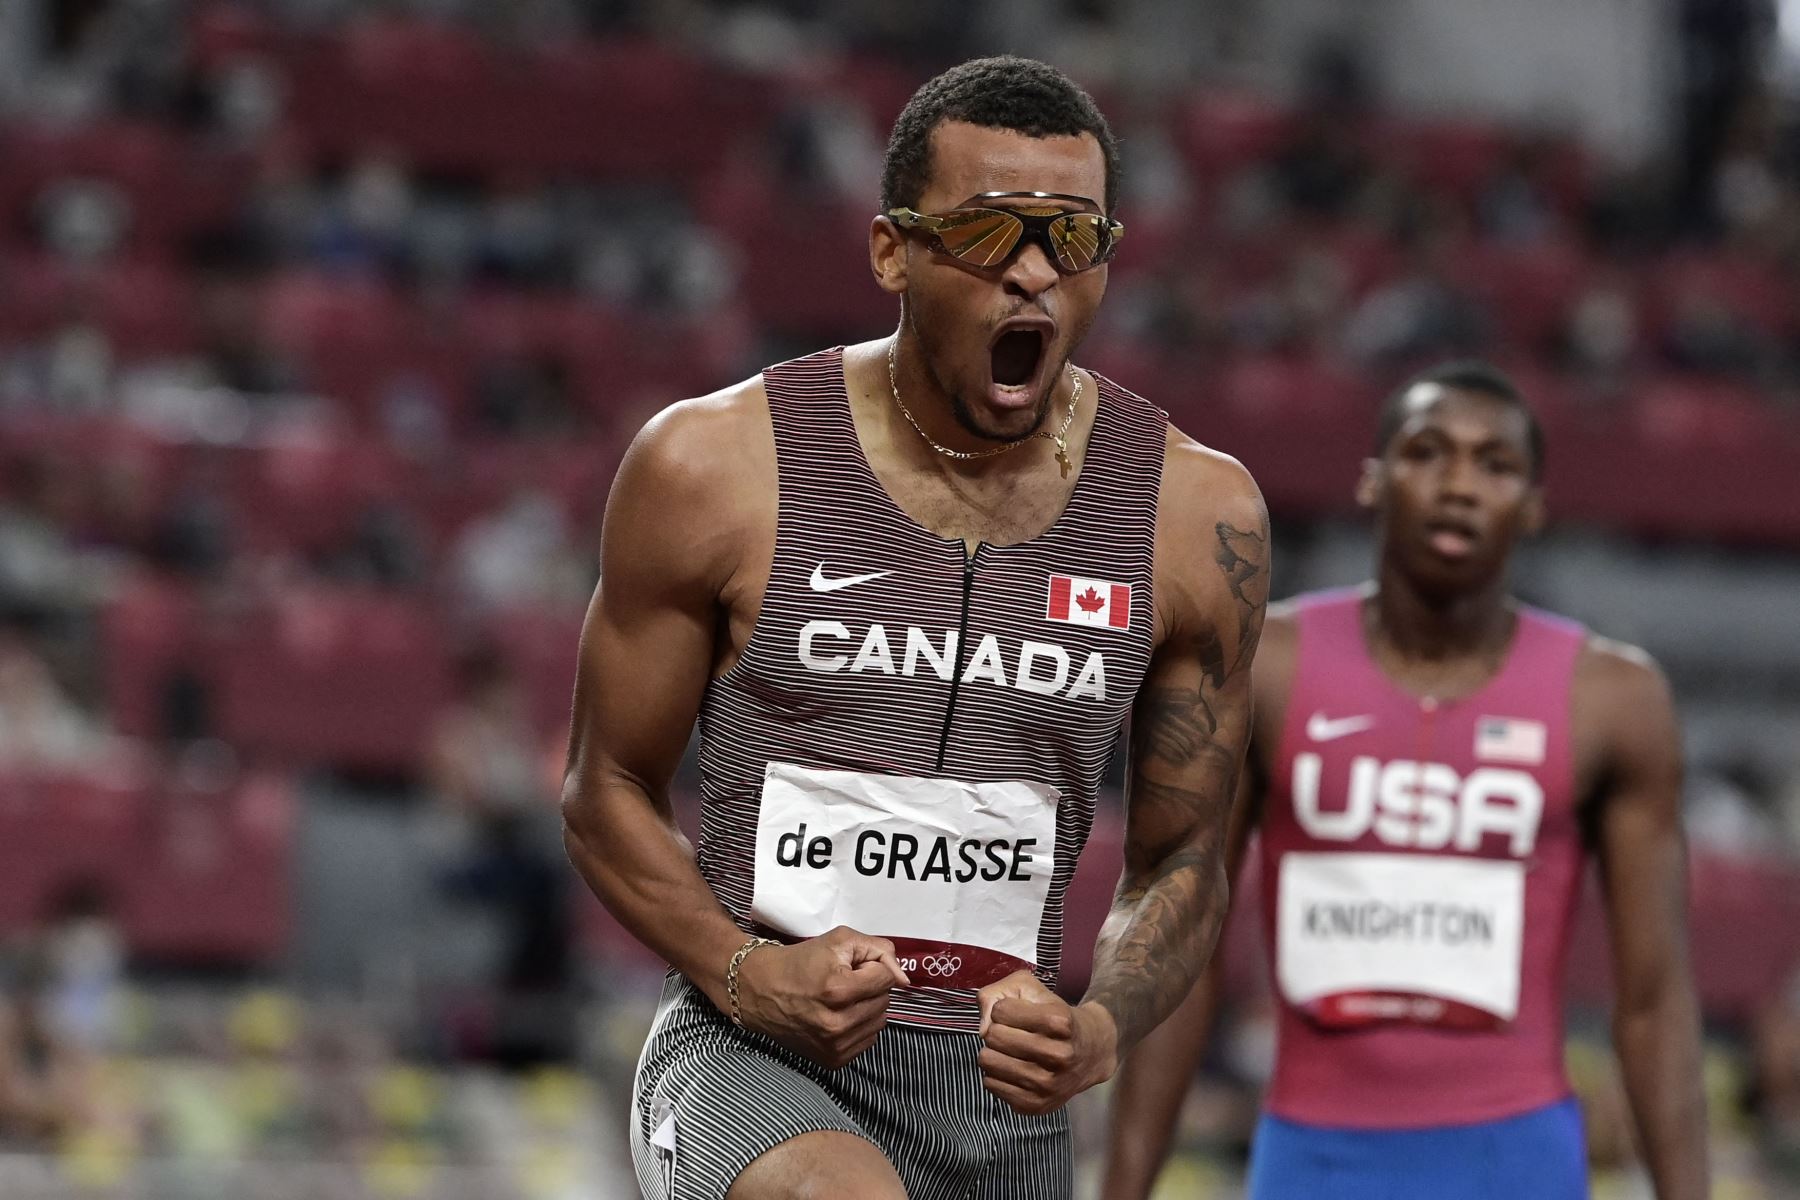 El canadiense Andre De Grasse  celebra después de ganar la final masculina de 200 metros durante los Juegos Olímpicos de Tokio 2020.
Foto: AFP